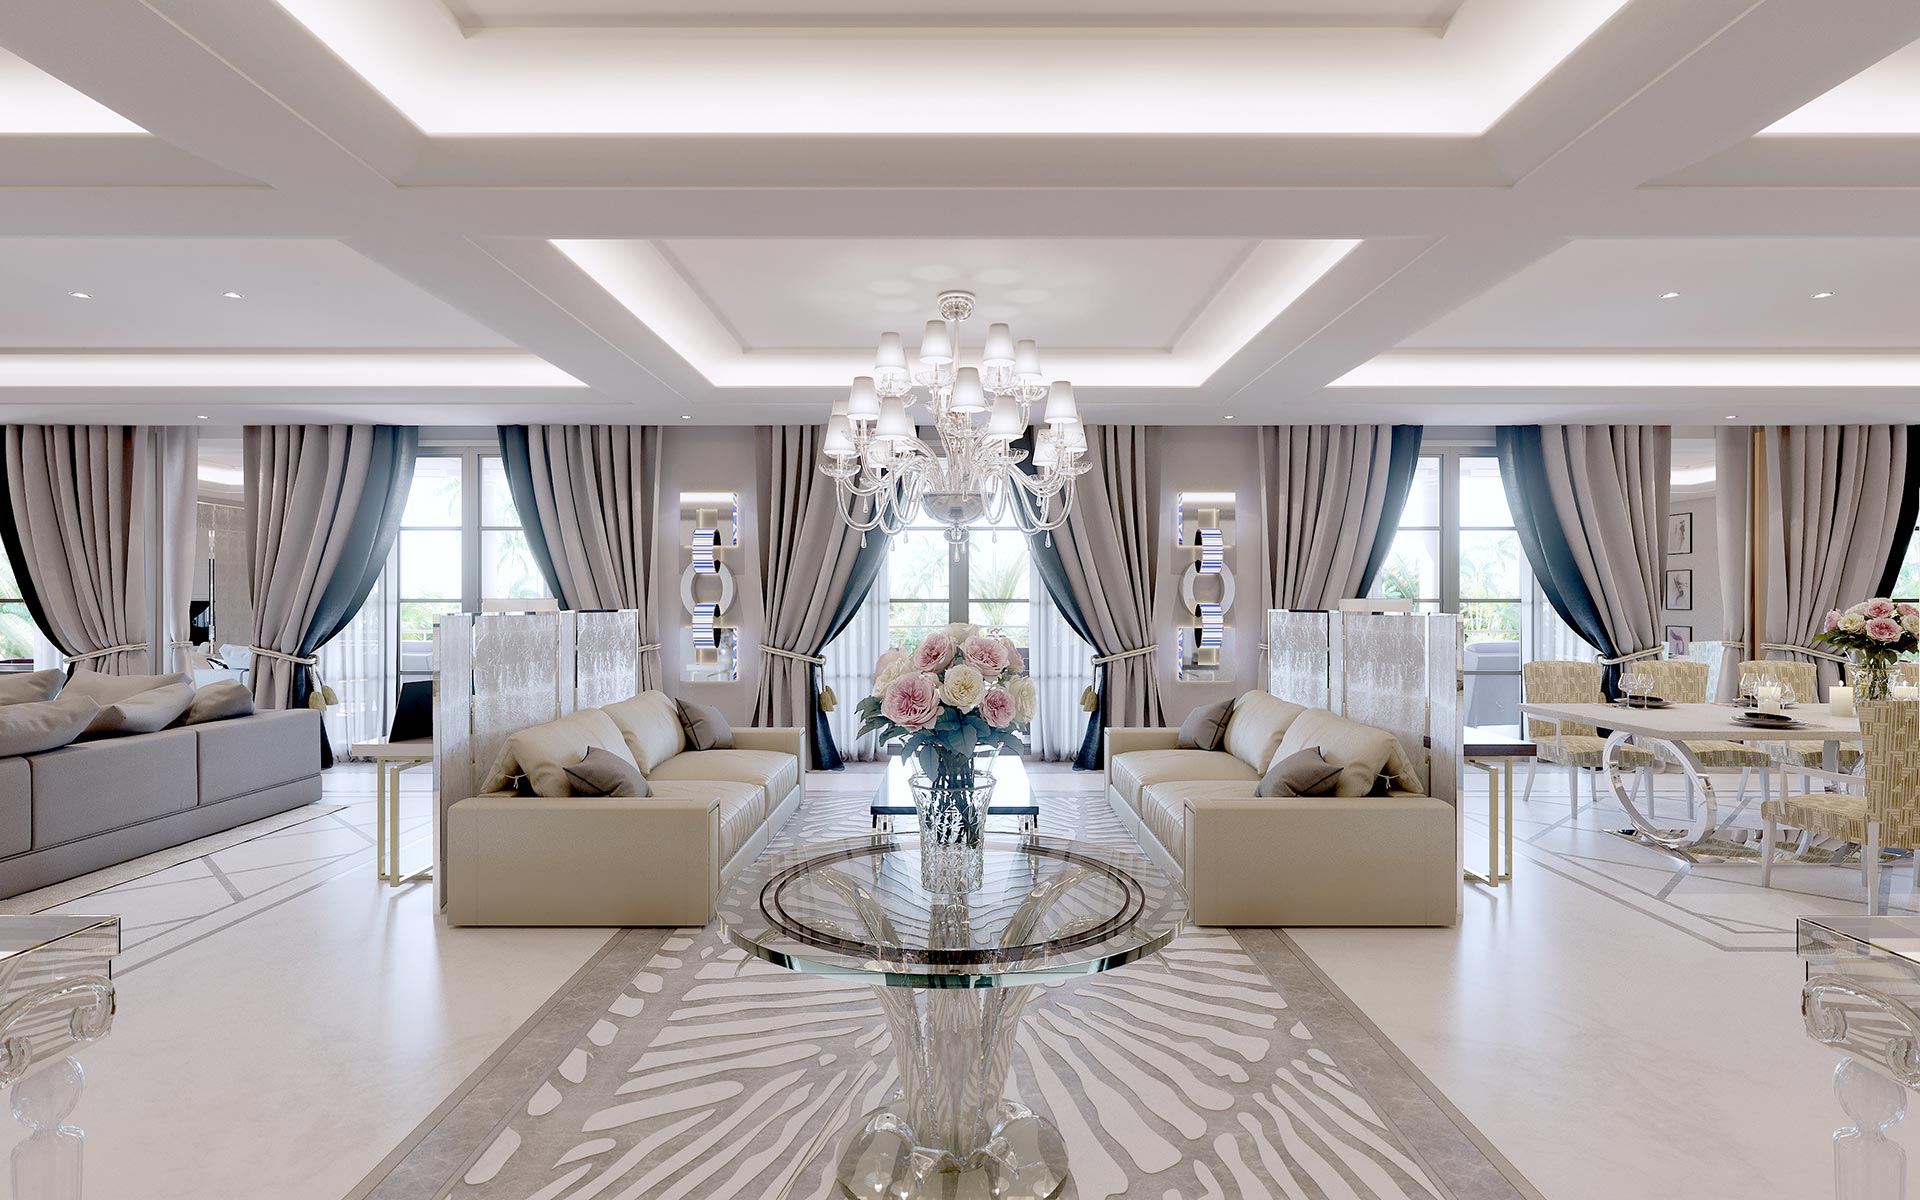 Vue 3D de l'intérieur d'une villa de luxe aux couleurs claires